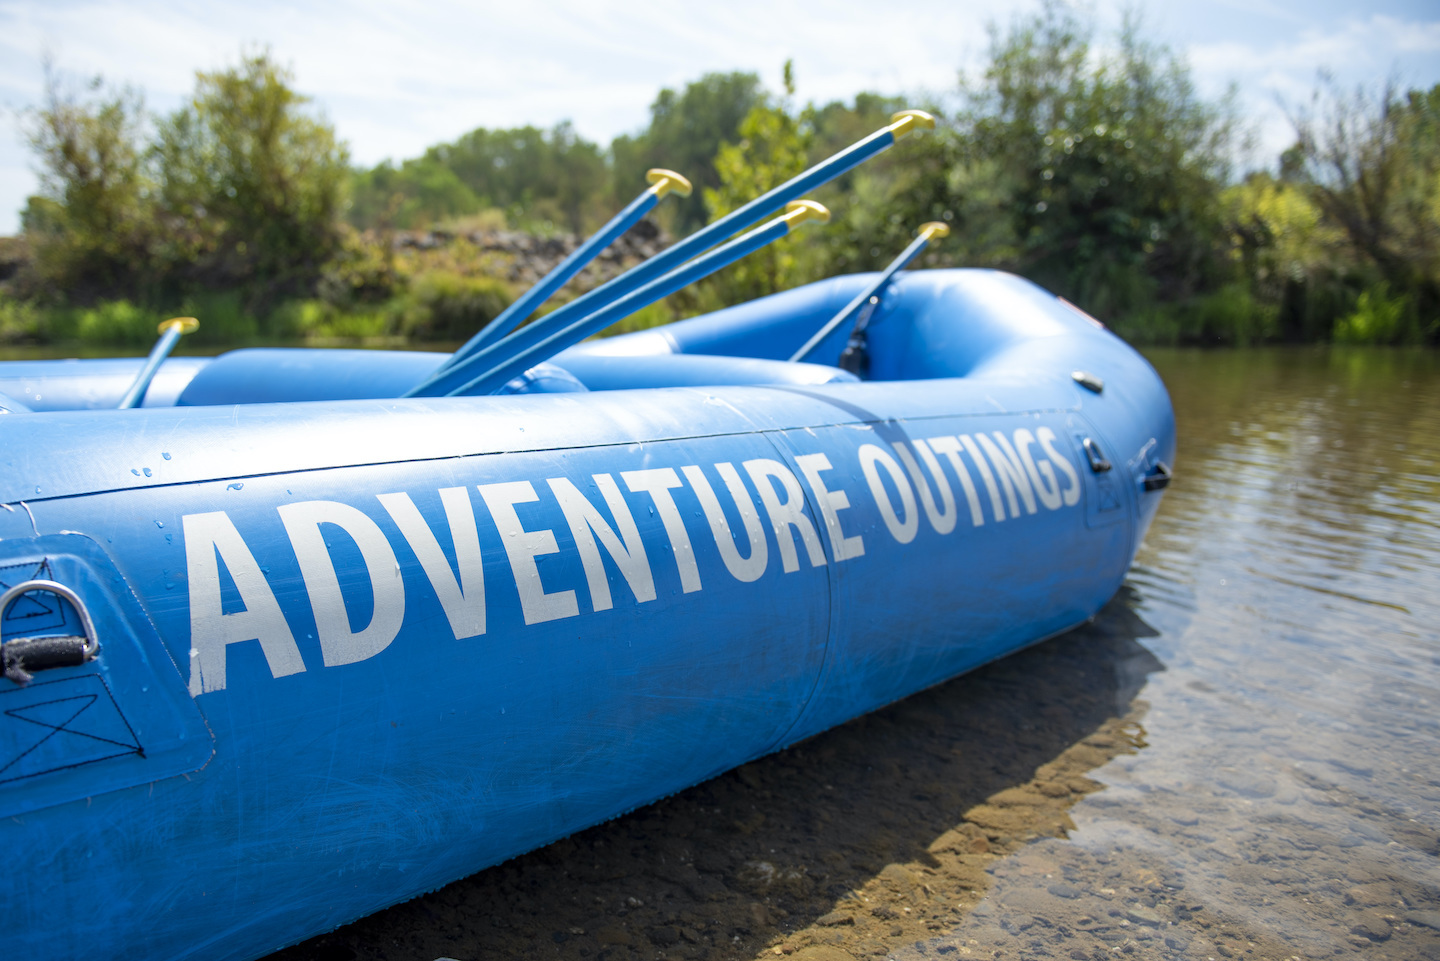 Adventure Outings Raft